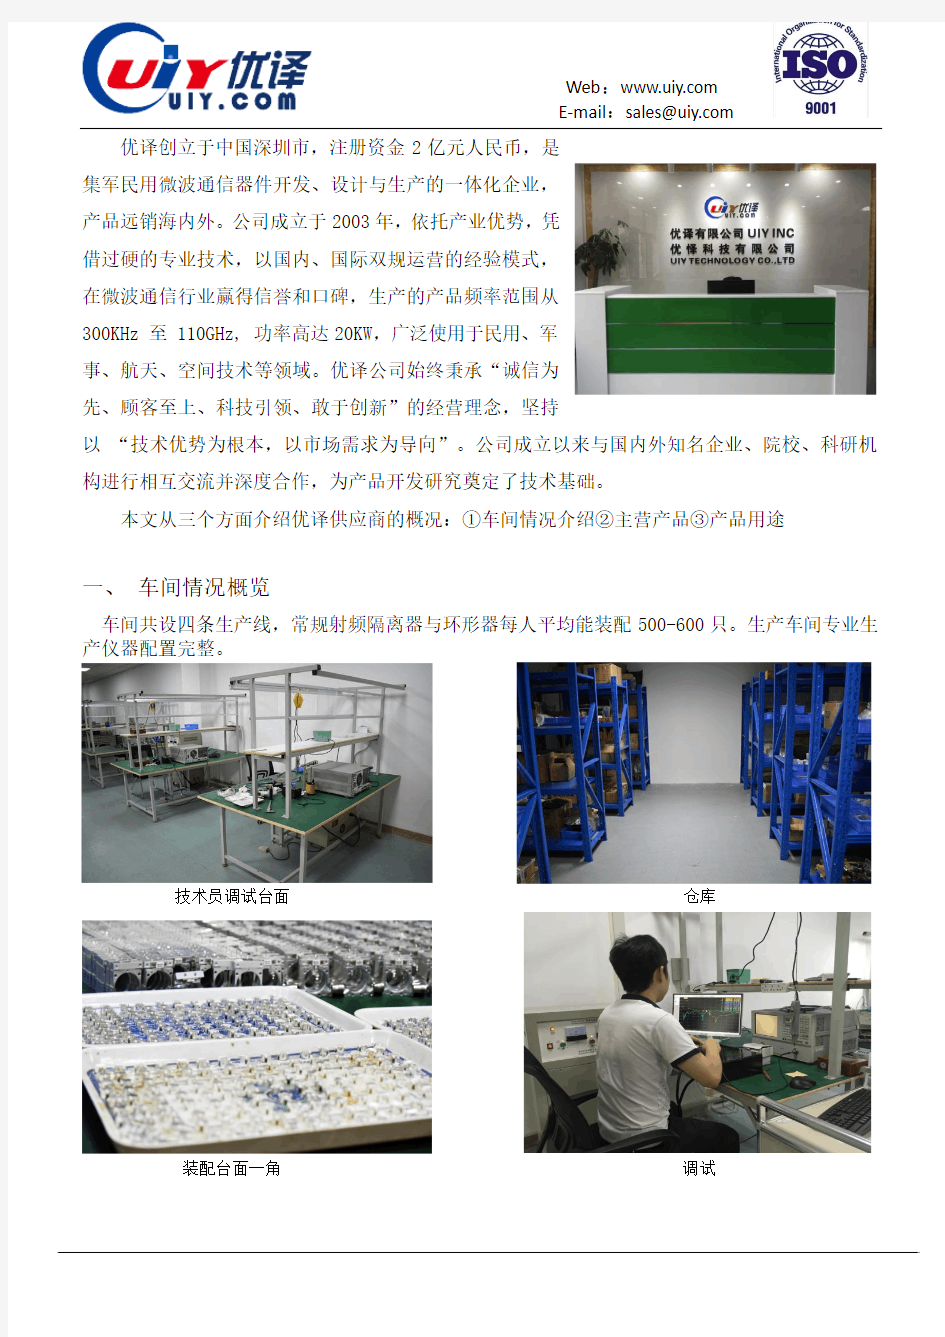 射频隔离器环形器生产厂家—优译(UIY)